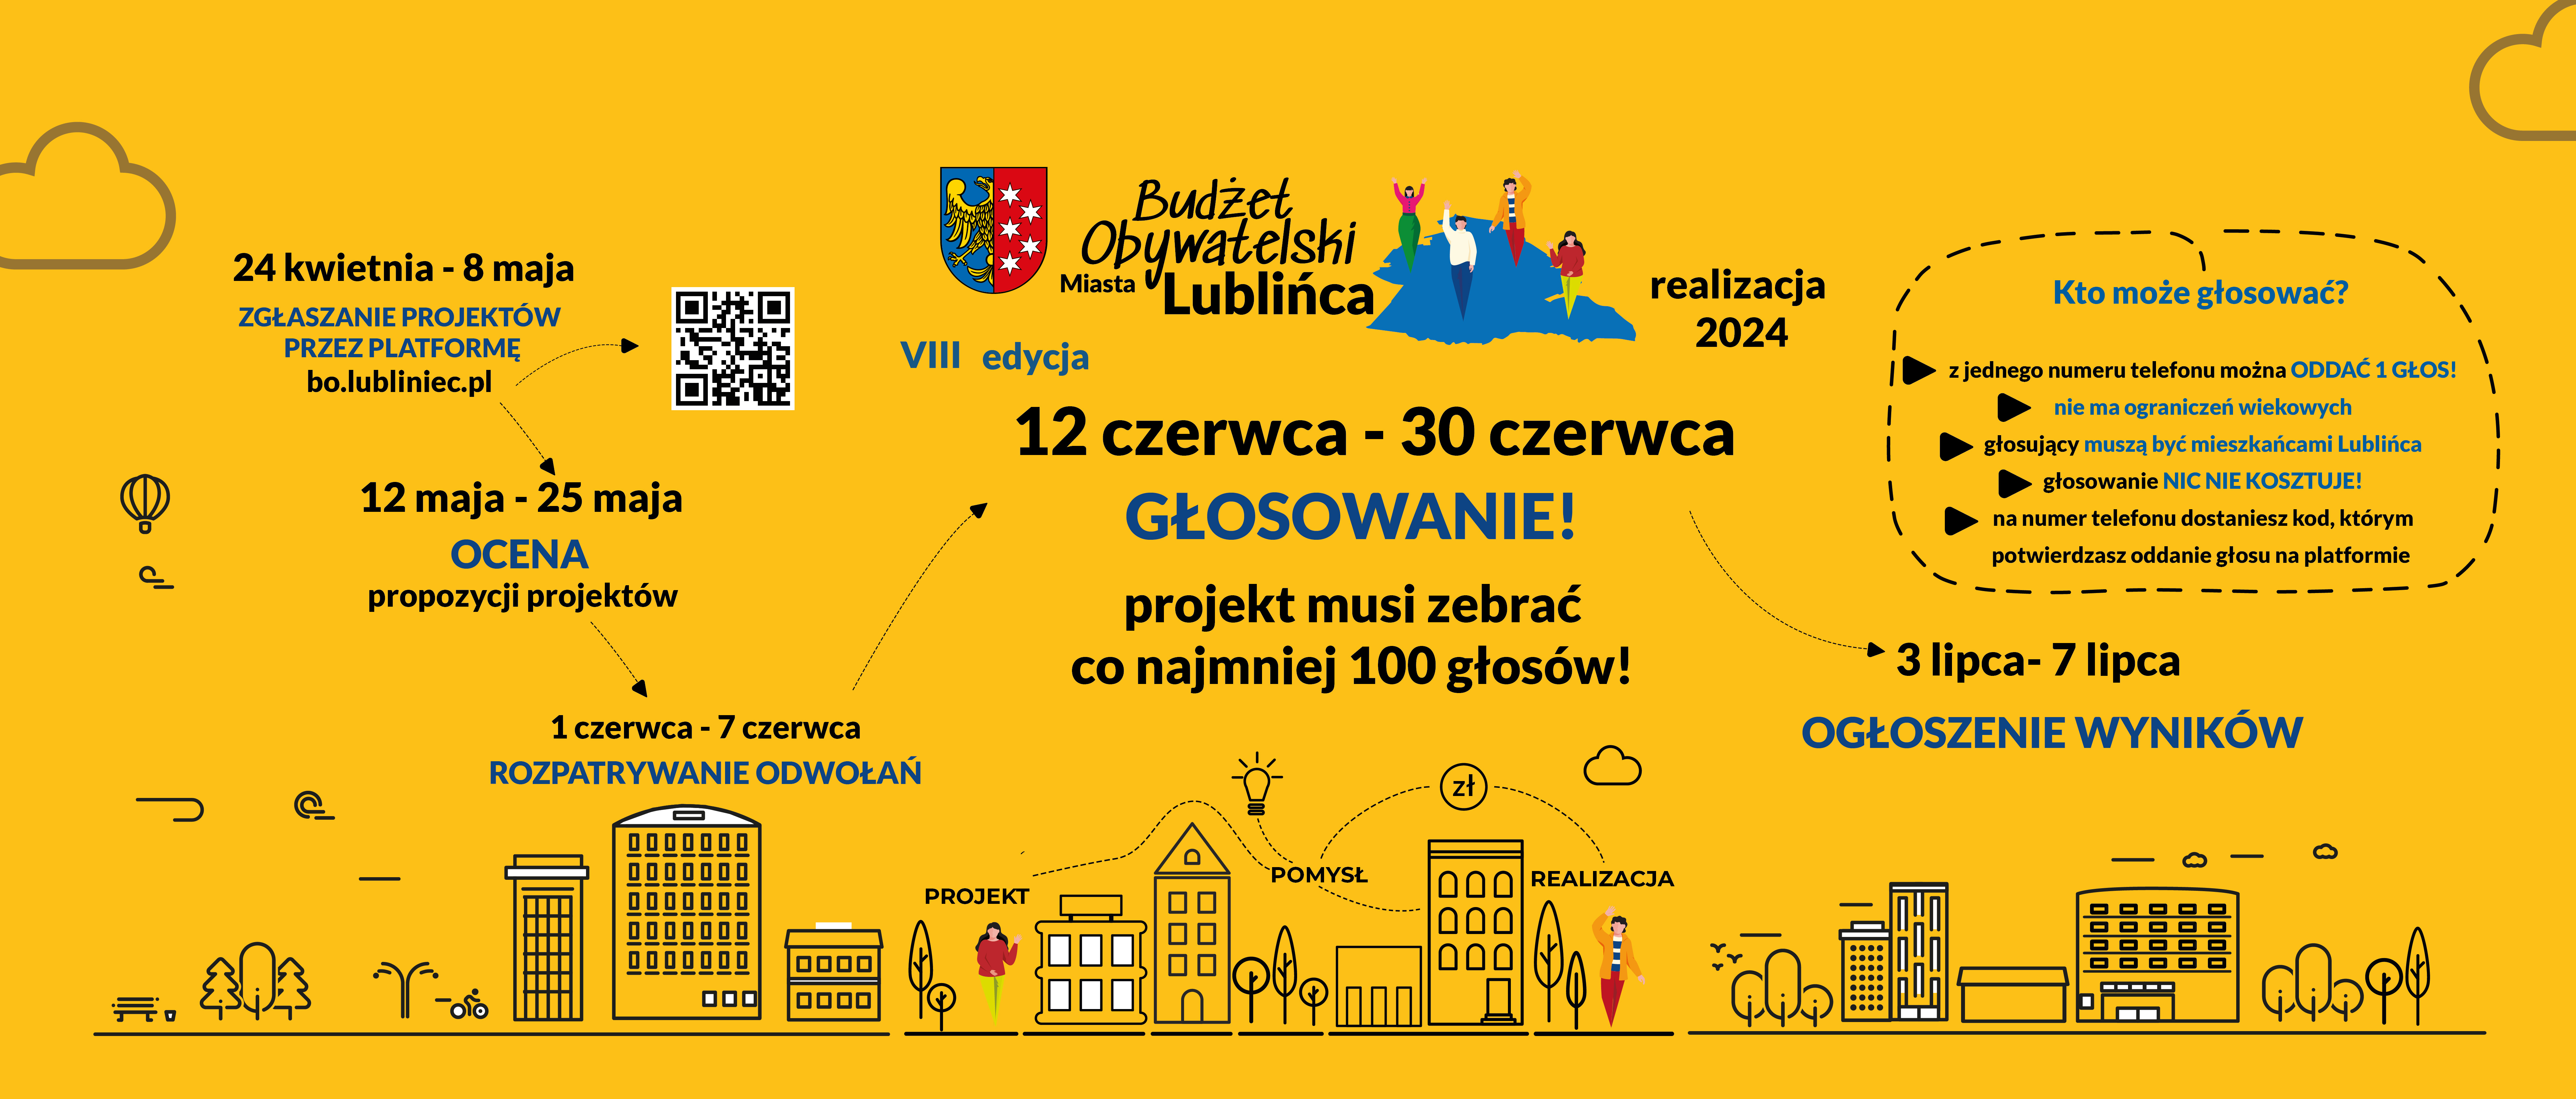 zgłaszanie projektów Budżetu obywatelskiego przez platformę BO.lubliniec.pl od 24.04 do 8.05